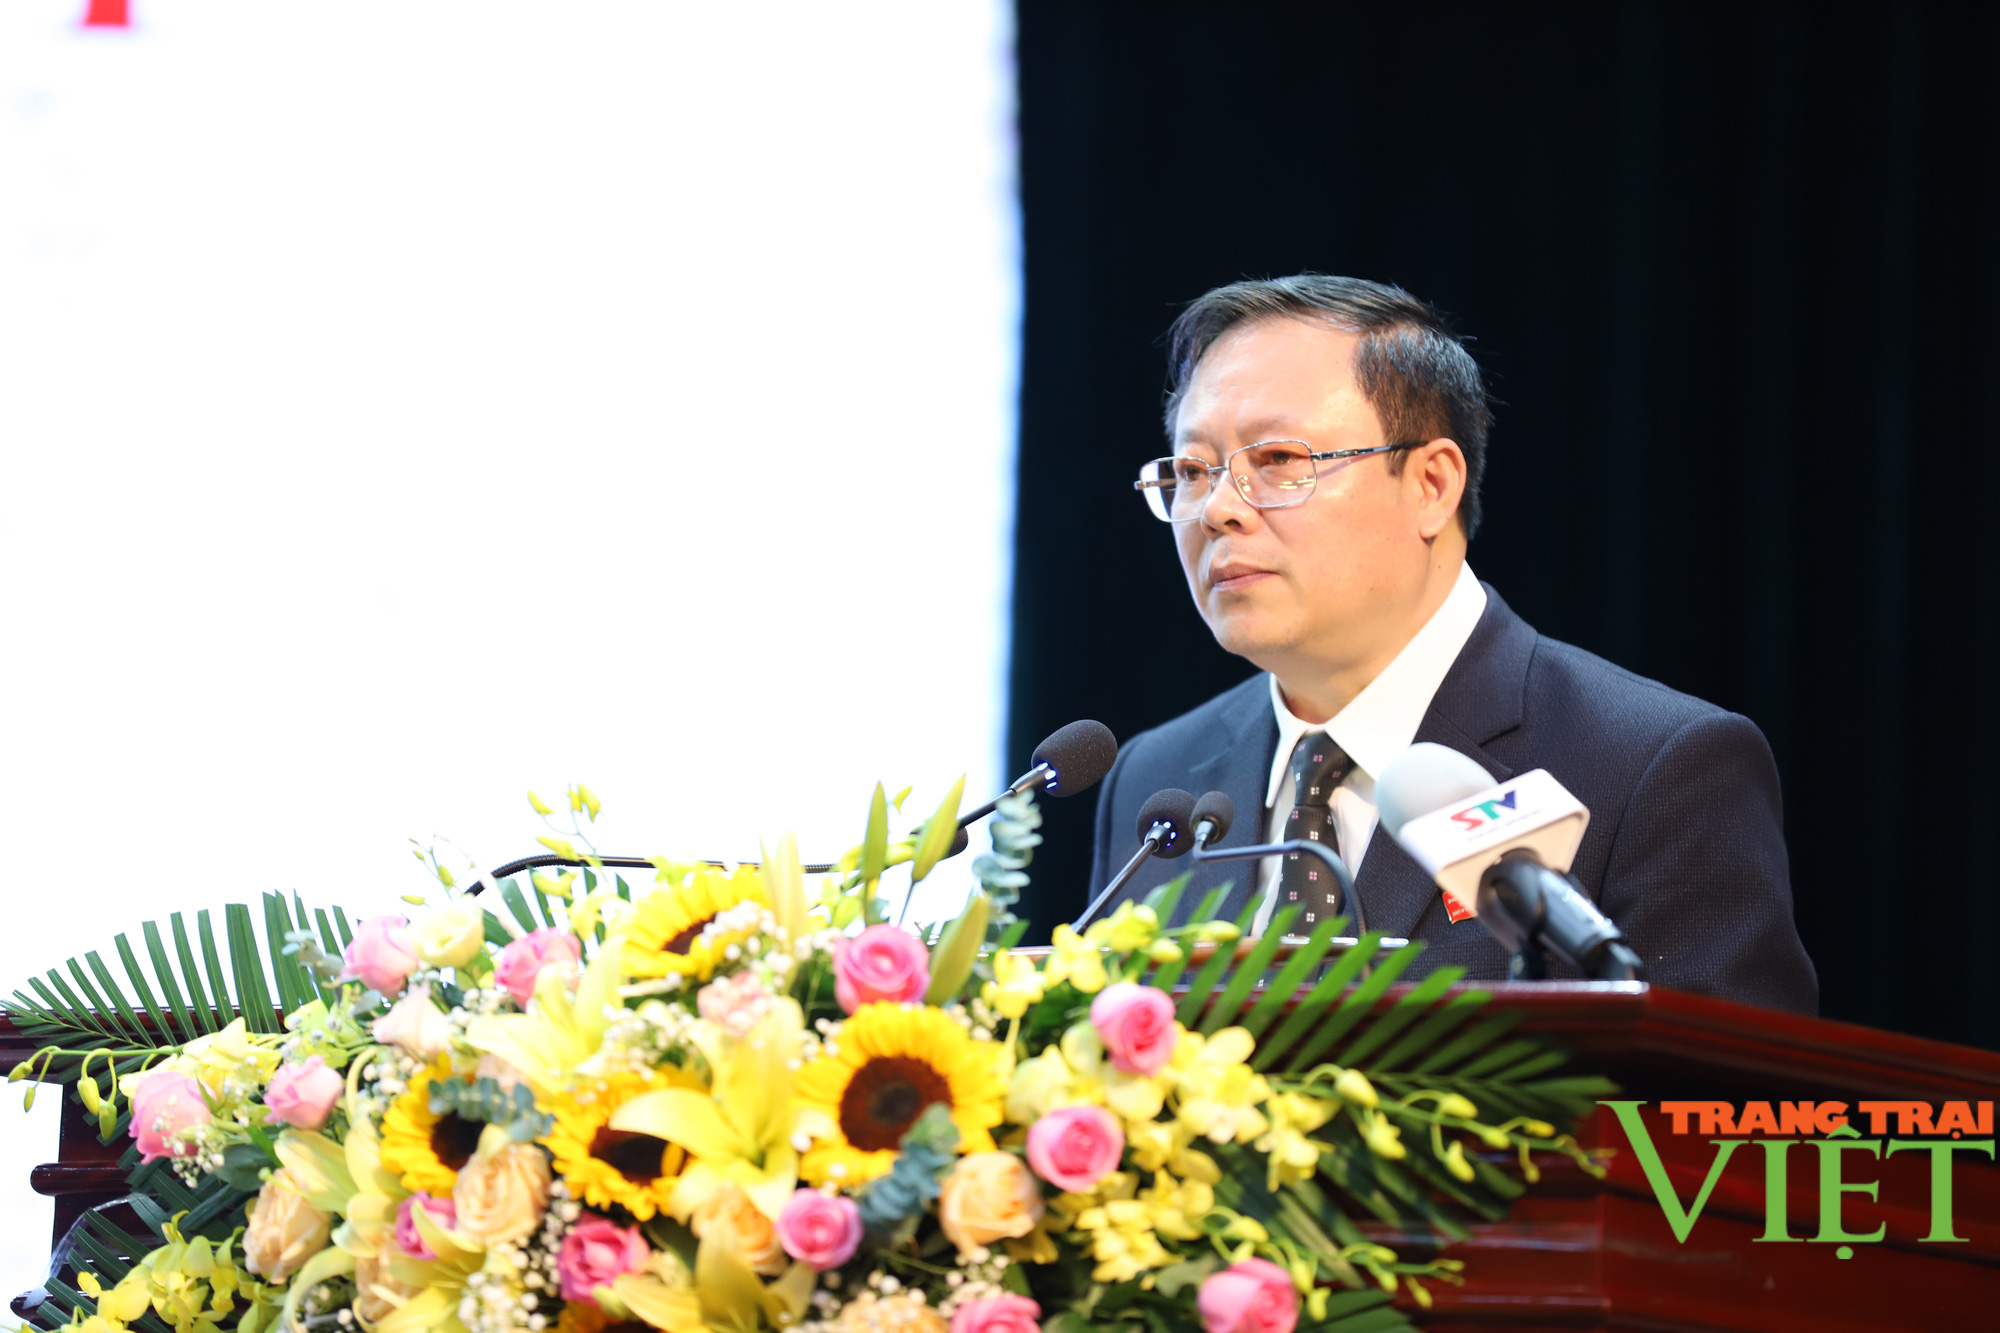 Chủ tịch HĐND và UBND tỉnh Sơn La tái đắc cử nhiệm kỳ 2021 - 2026 - Ảnh 2.